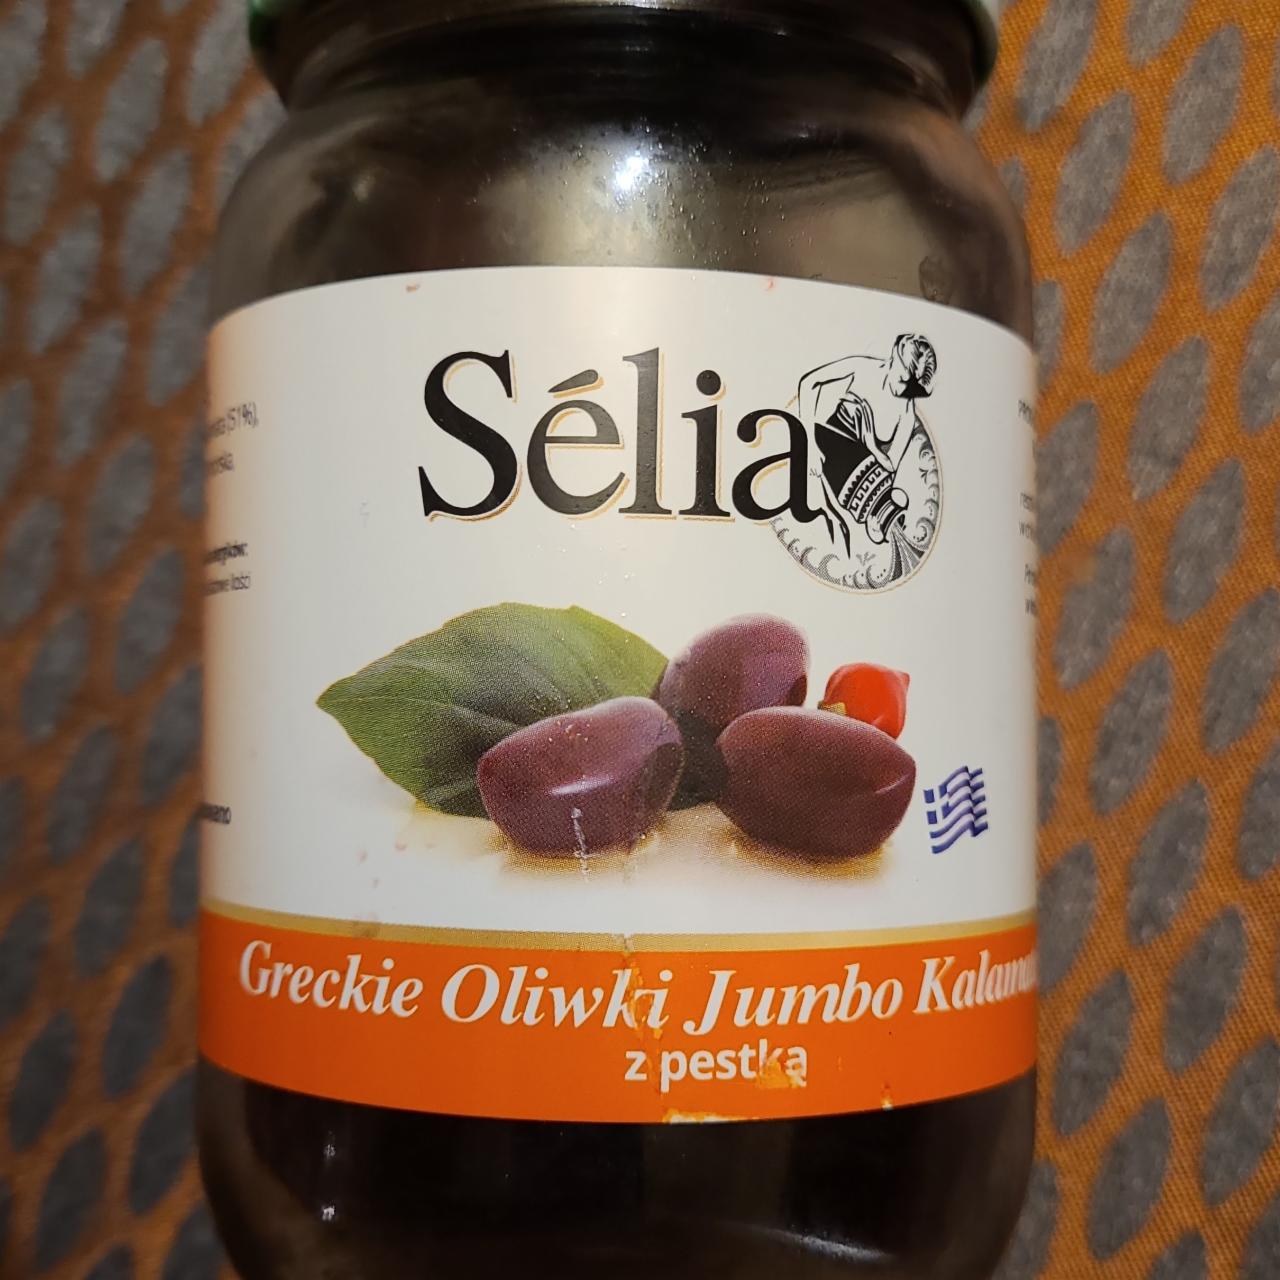 Zdjęcia - Greckie oliwki jumbo kalamata bez pestki Sélia